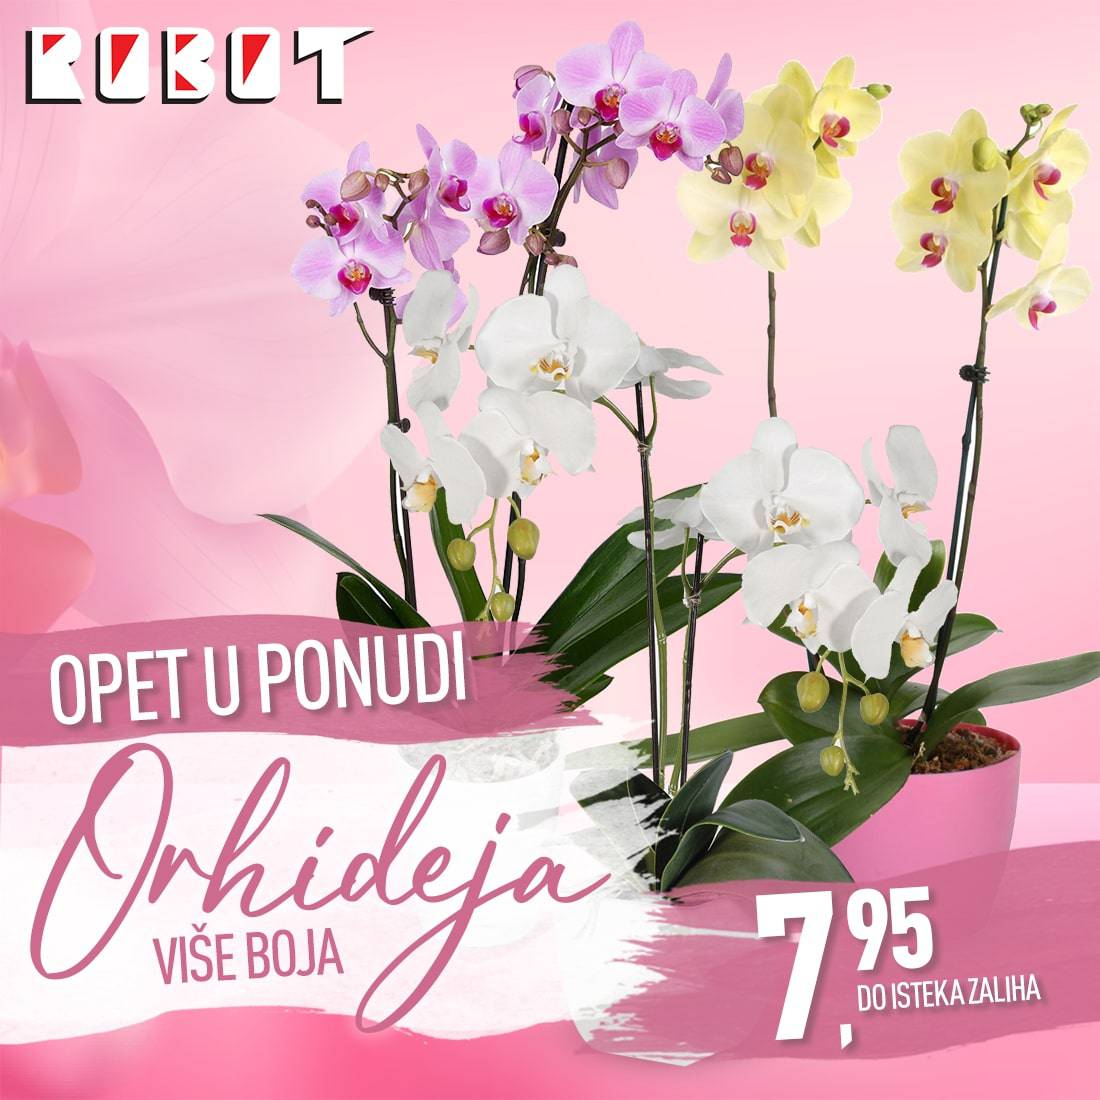 Želite orhideju? U Robotu možete naći orhideje po cijeni 7,95KM.